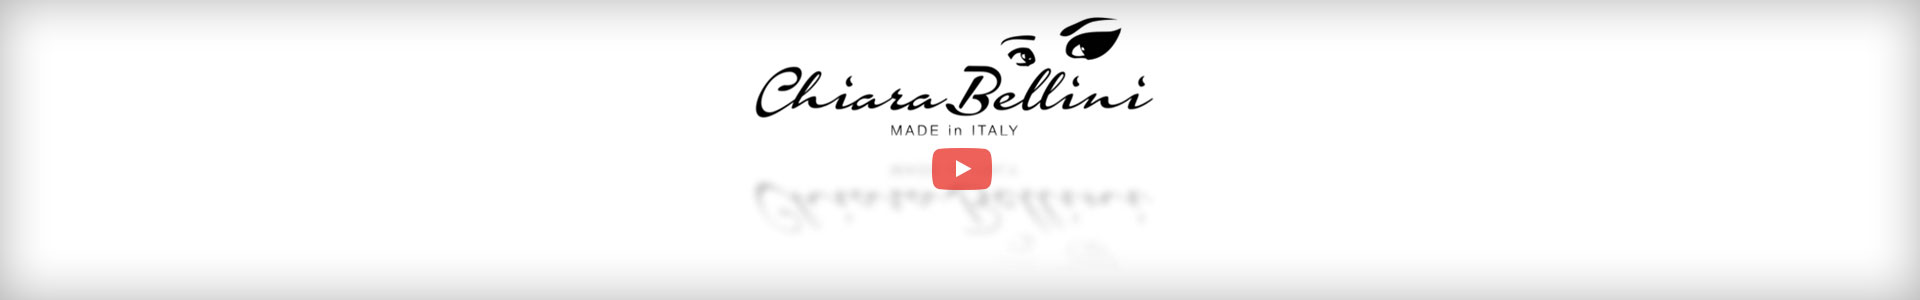 E‘ online il nuovo video aziendale di Chiara Bellini